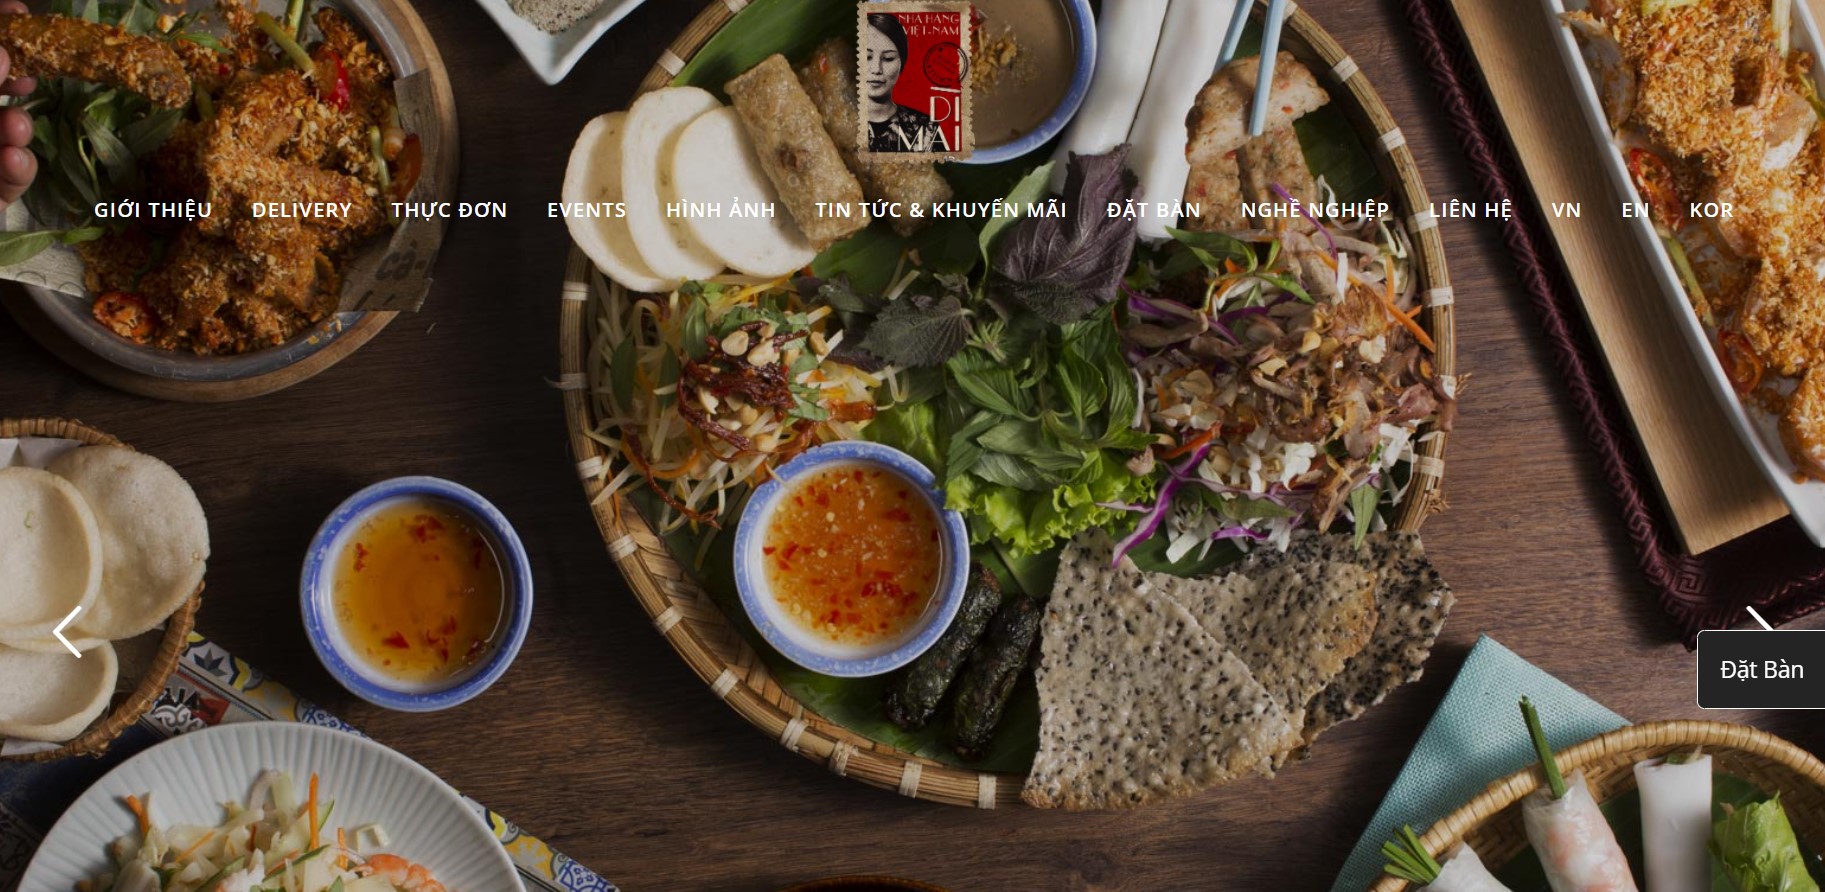 Top 7 quán ăn ngon ở quận 7, Tp. Hồ Chí Minh 2022 - Top10CongTy